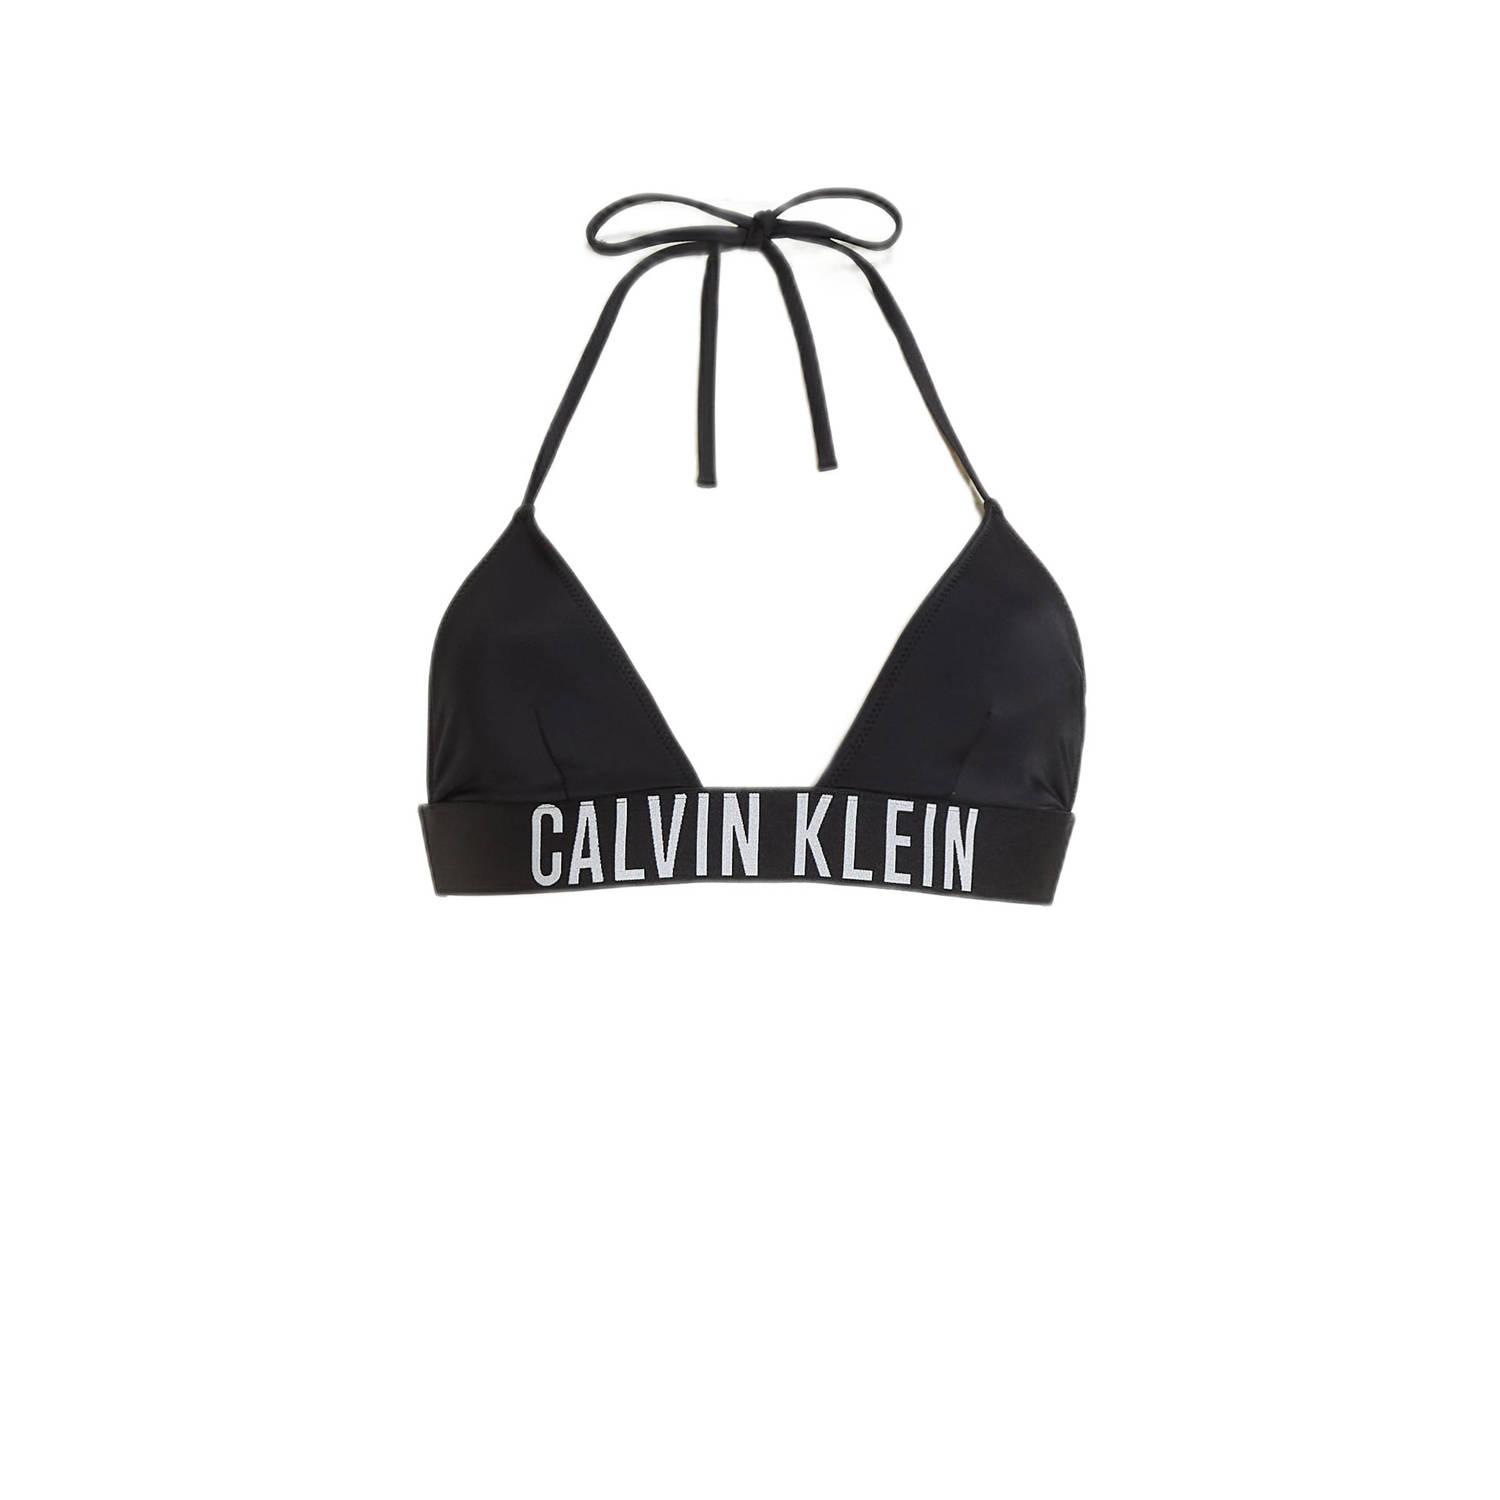 Calvin Klein voorgevormde triangel bikinitop zwart